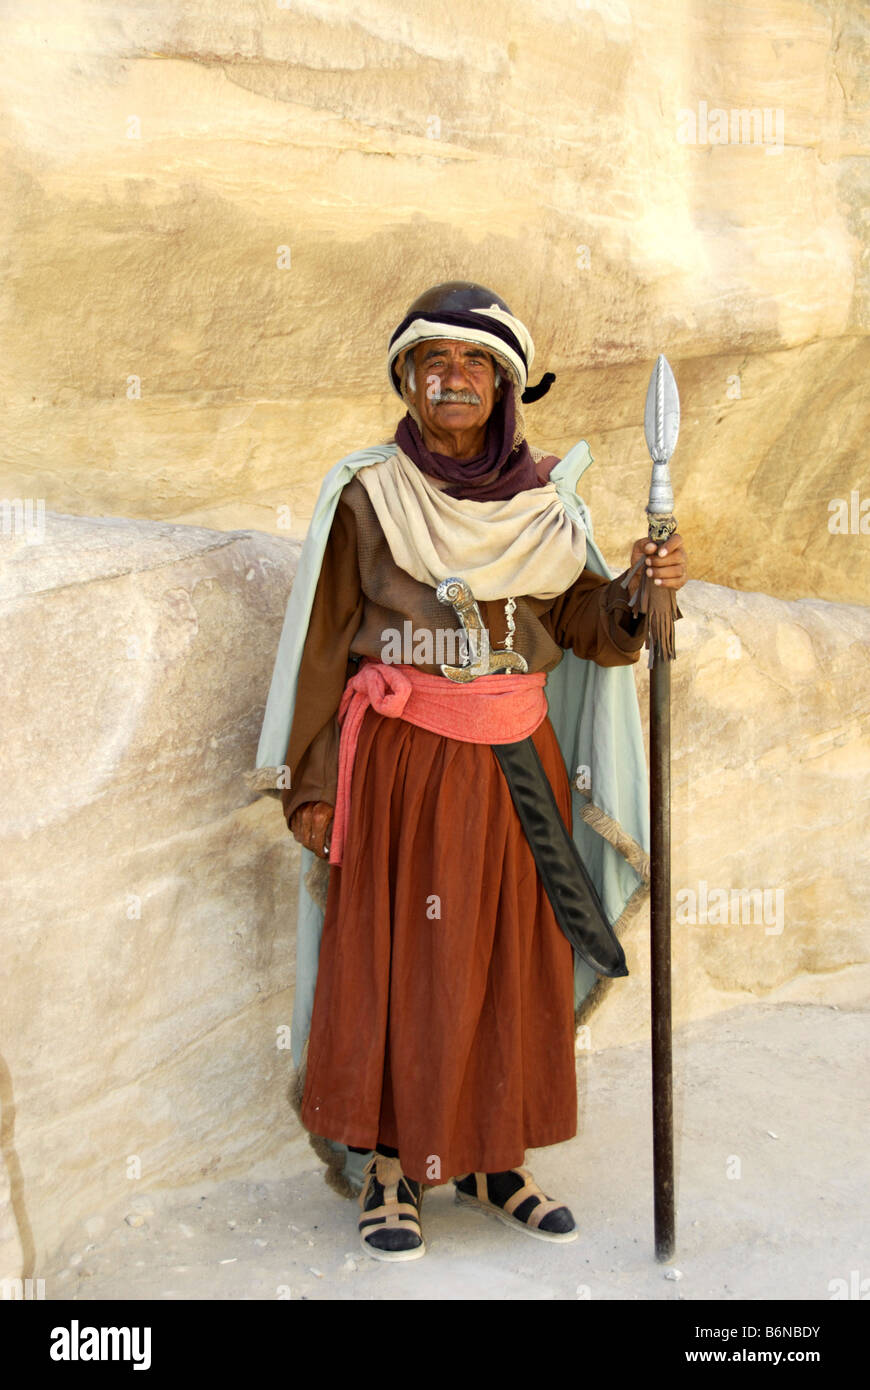 Actor dressed as Nabatean guard in Petra, Wadi Musa, Jordan Stock Photo